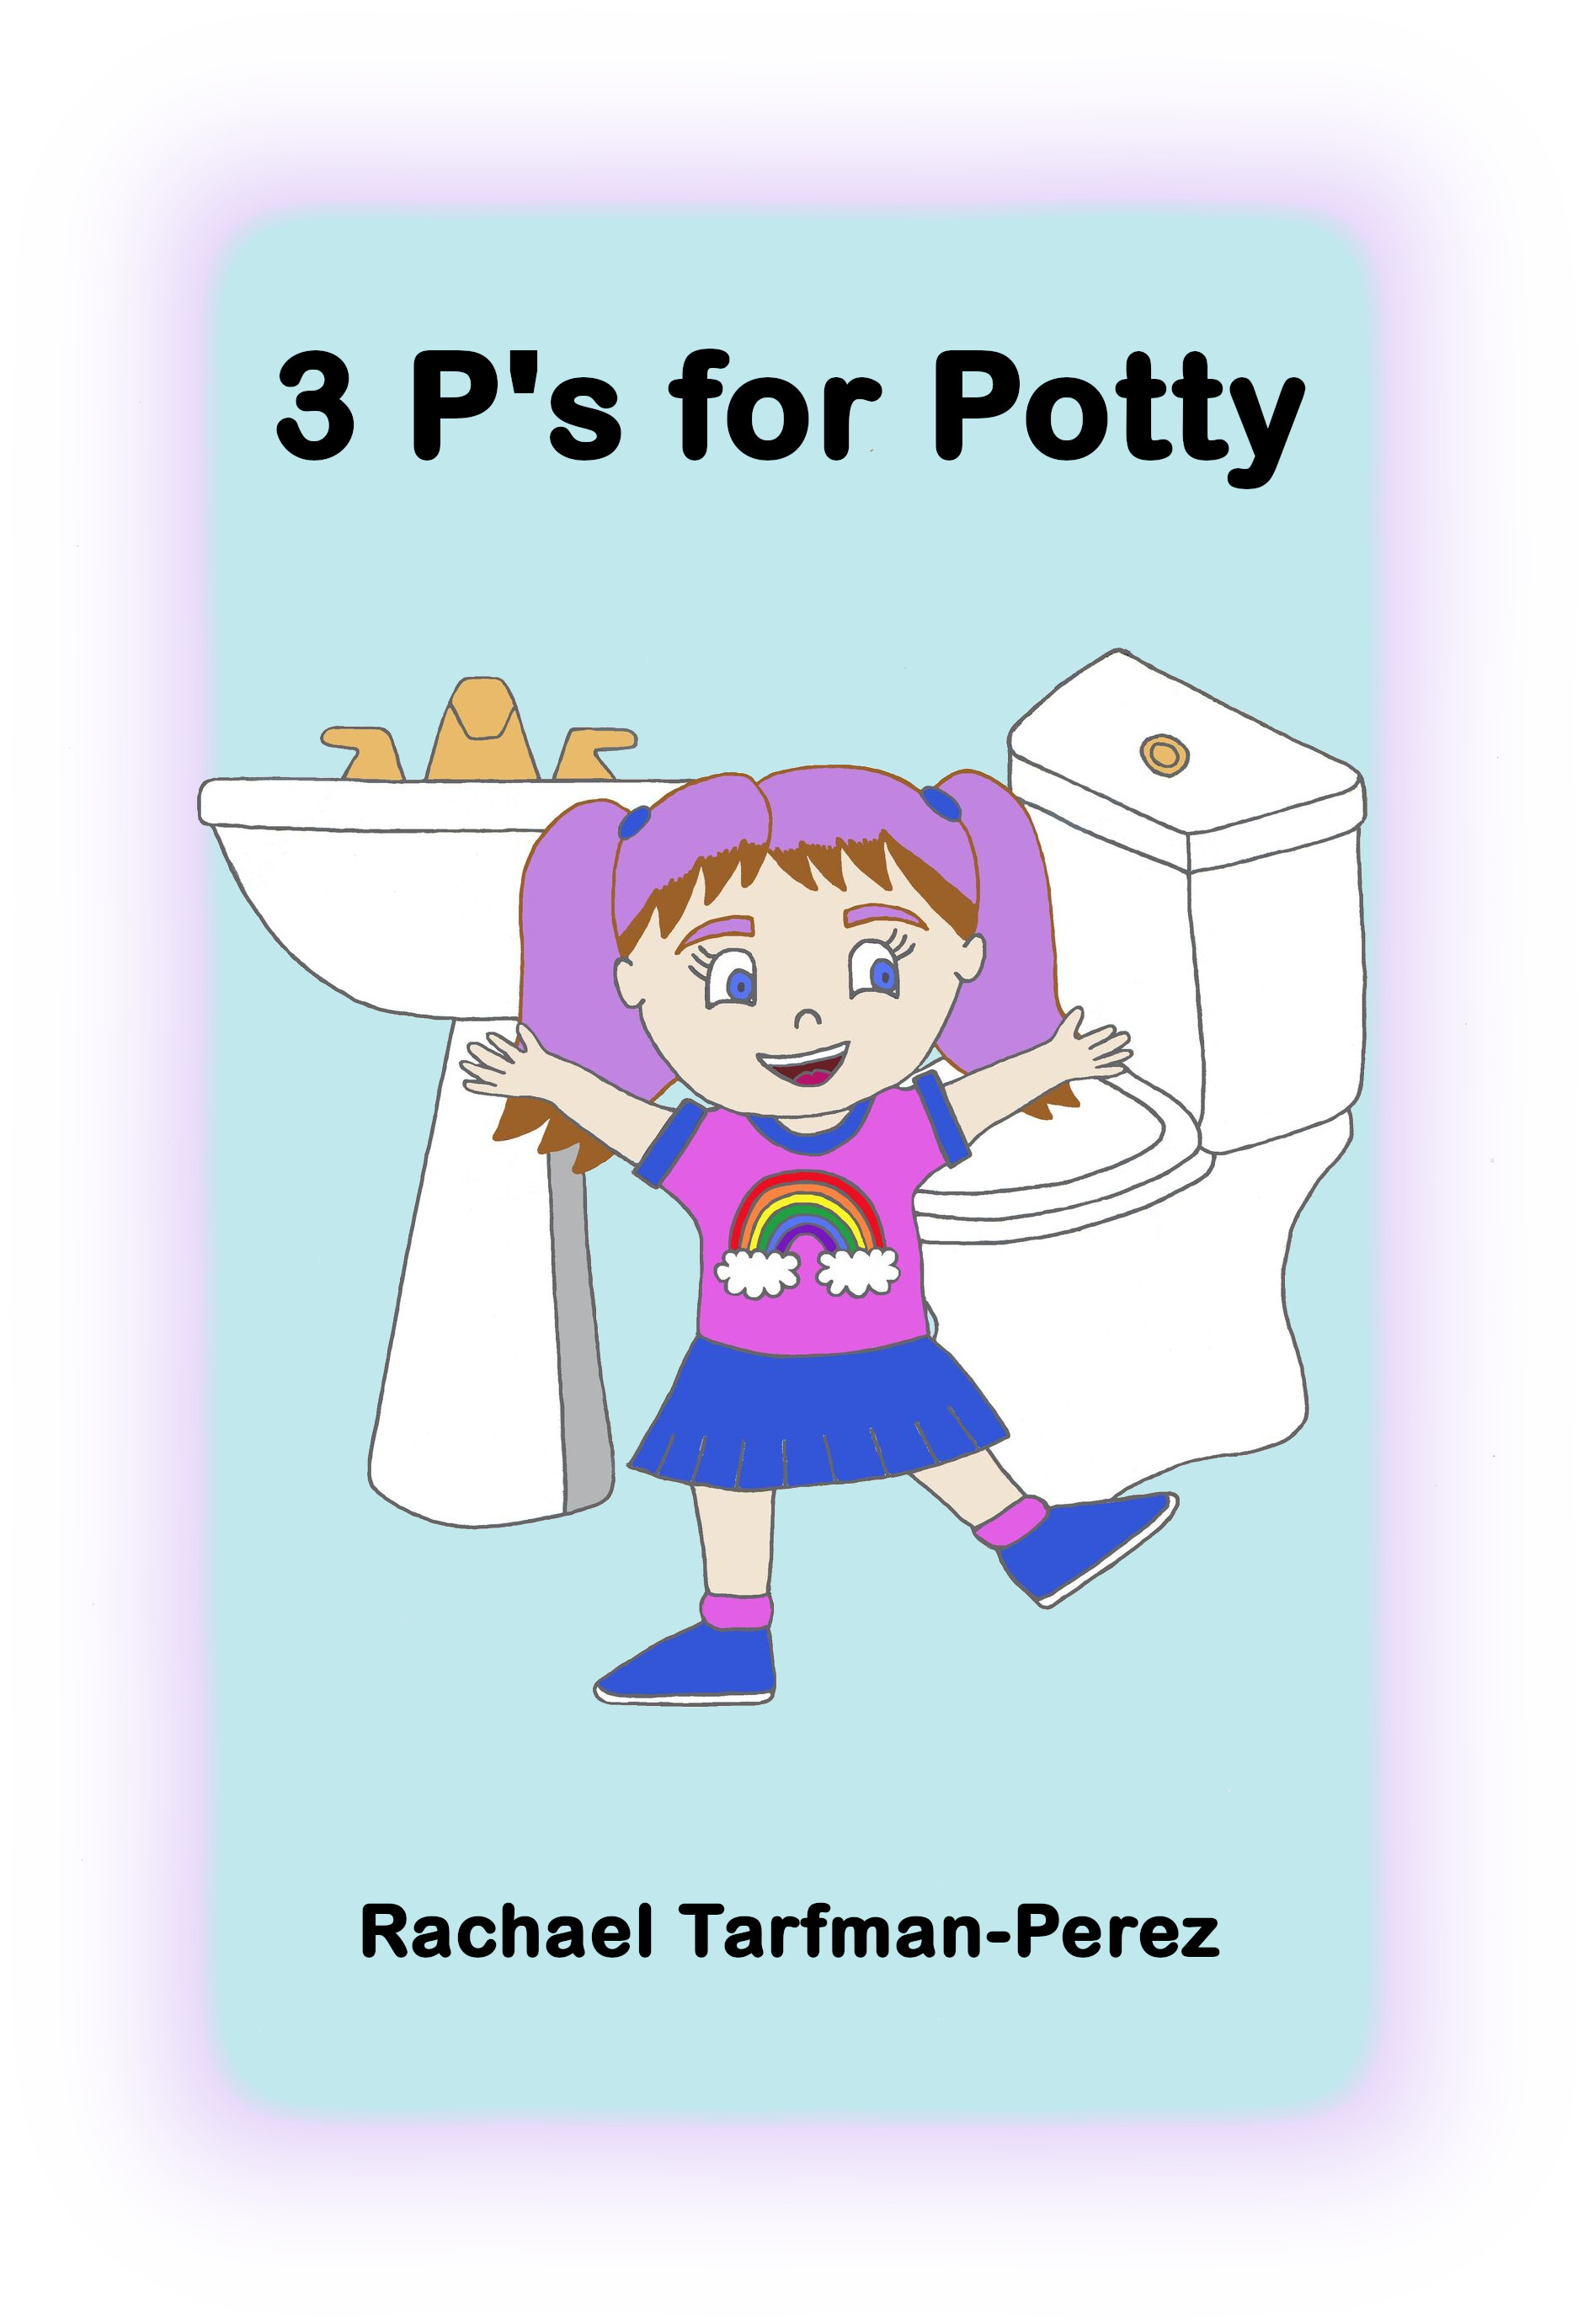 “3 P’s for Potty” Author Rachael Tarfman-Perez on The Zach Feldman Show